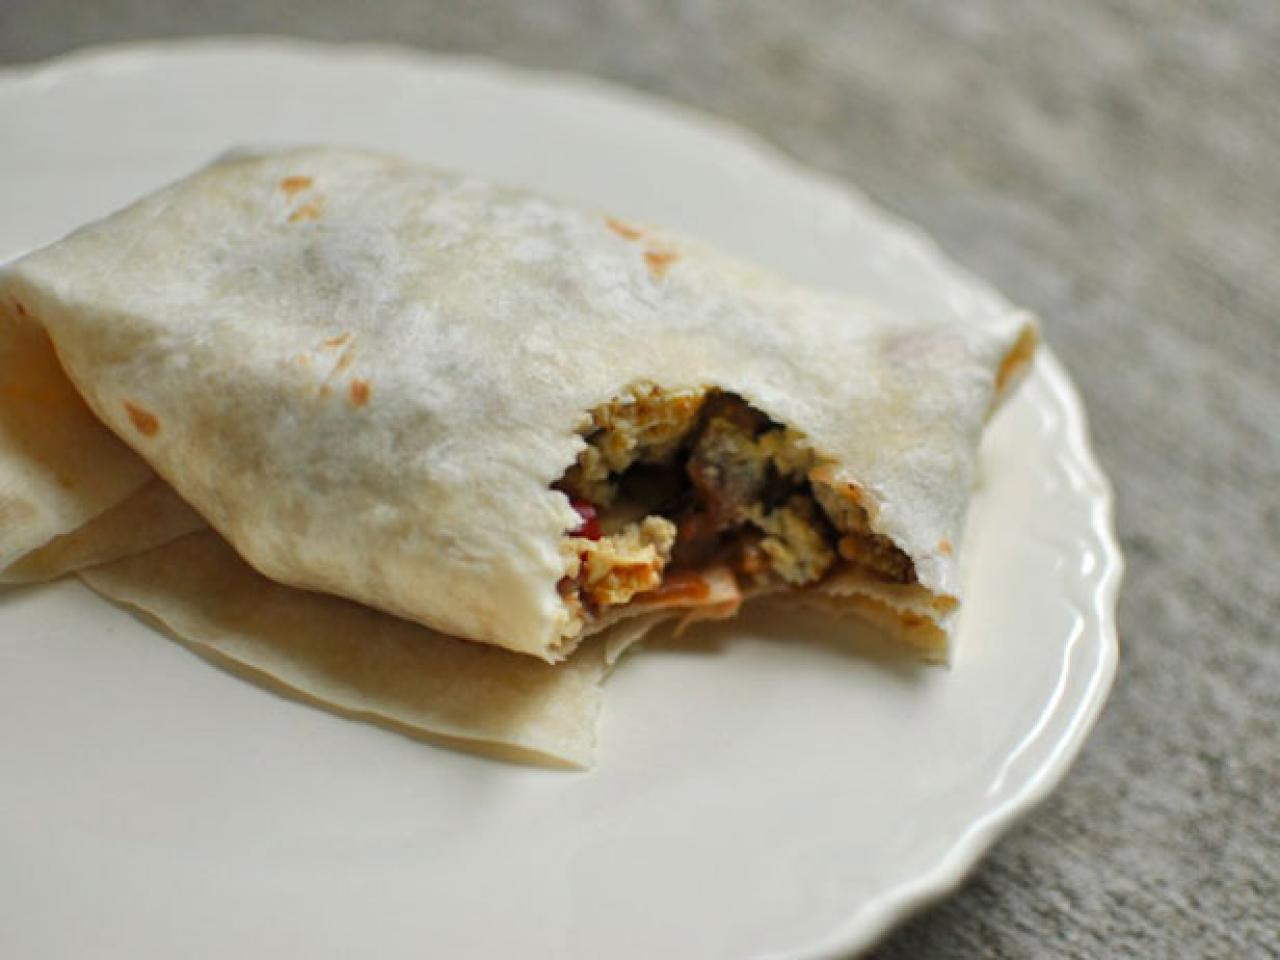 PW's Breakfast Burritos — The Weekender | FN Dish - Behind-the-Scenes ...